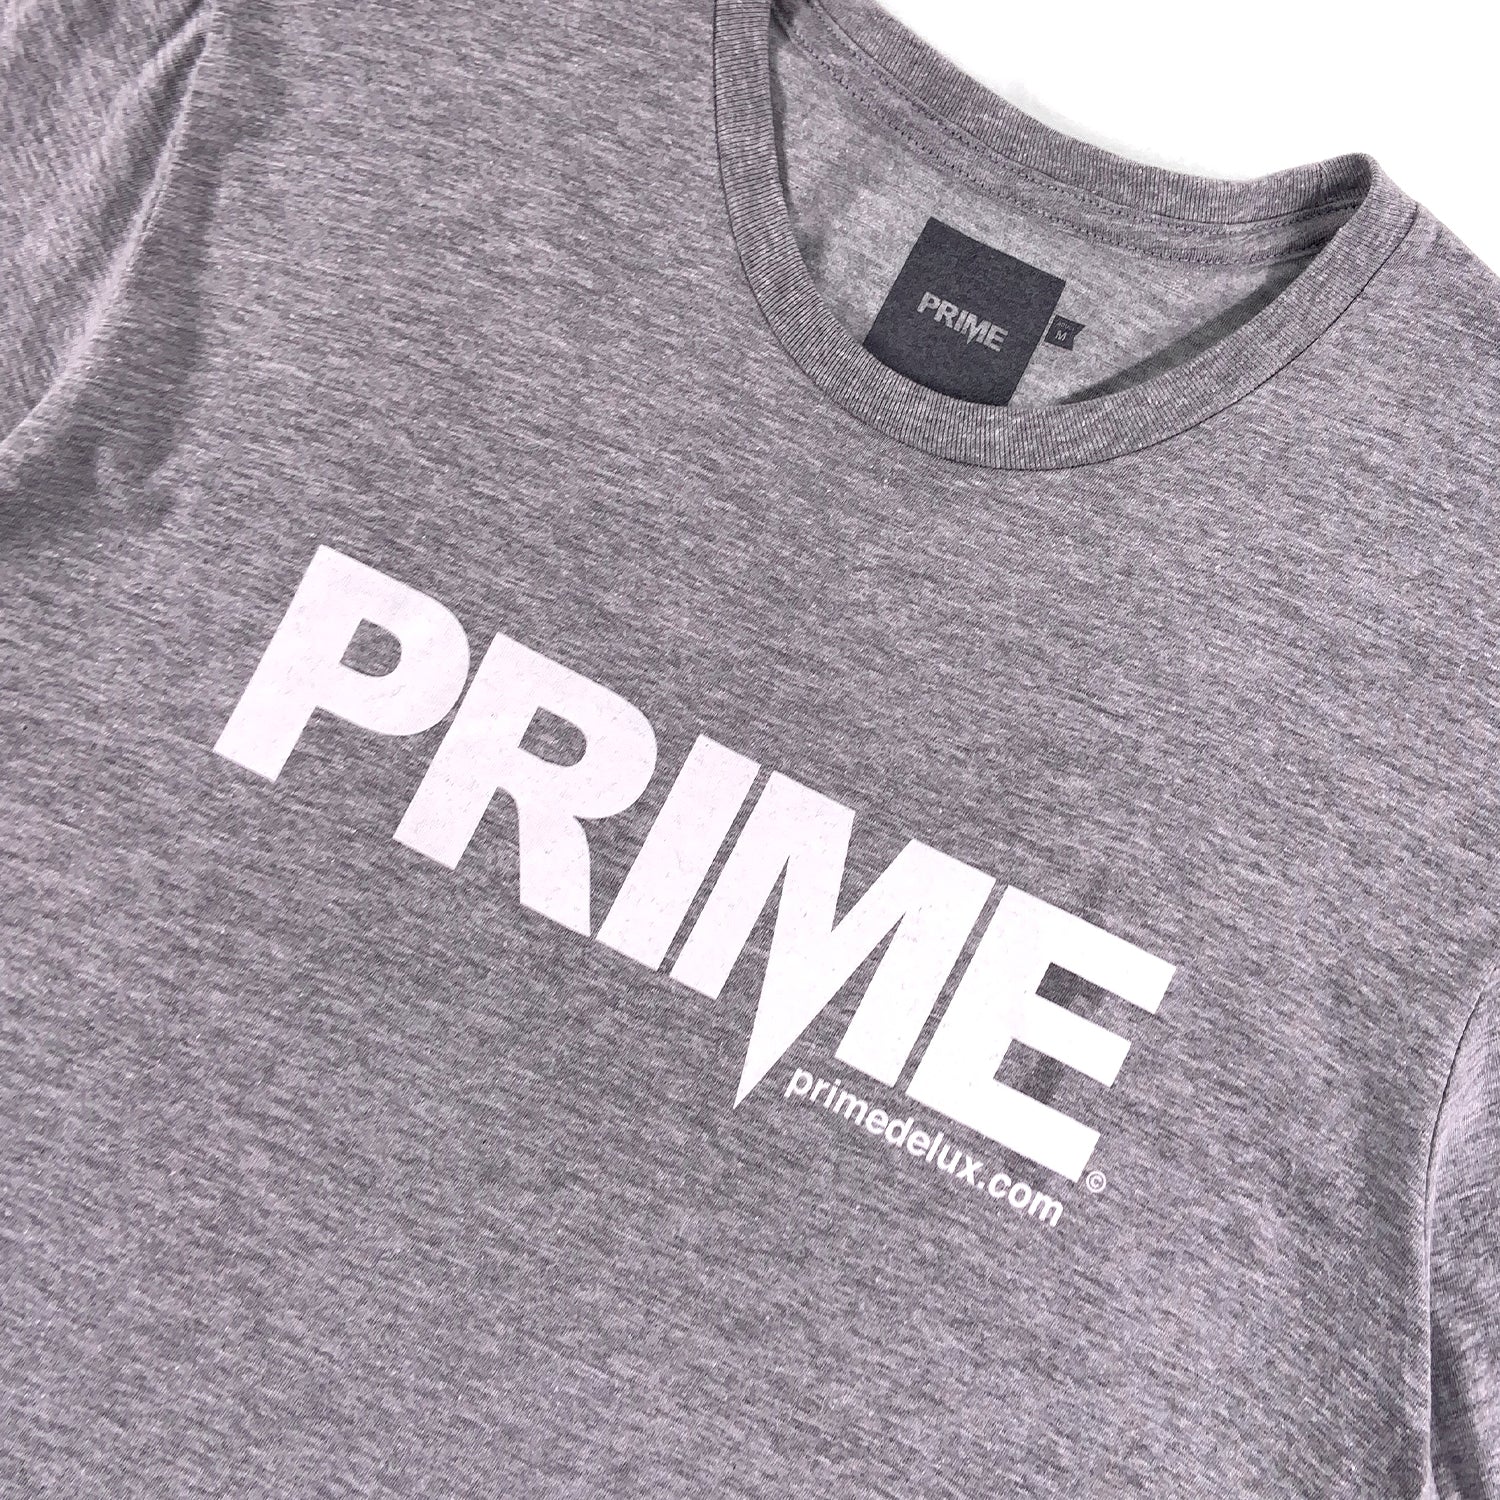 PRIME DELUX OG PREMIUM SHORT SLEEVE T-SHIRT - SPORT GREY / WHITE - Prime Delux Store